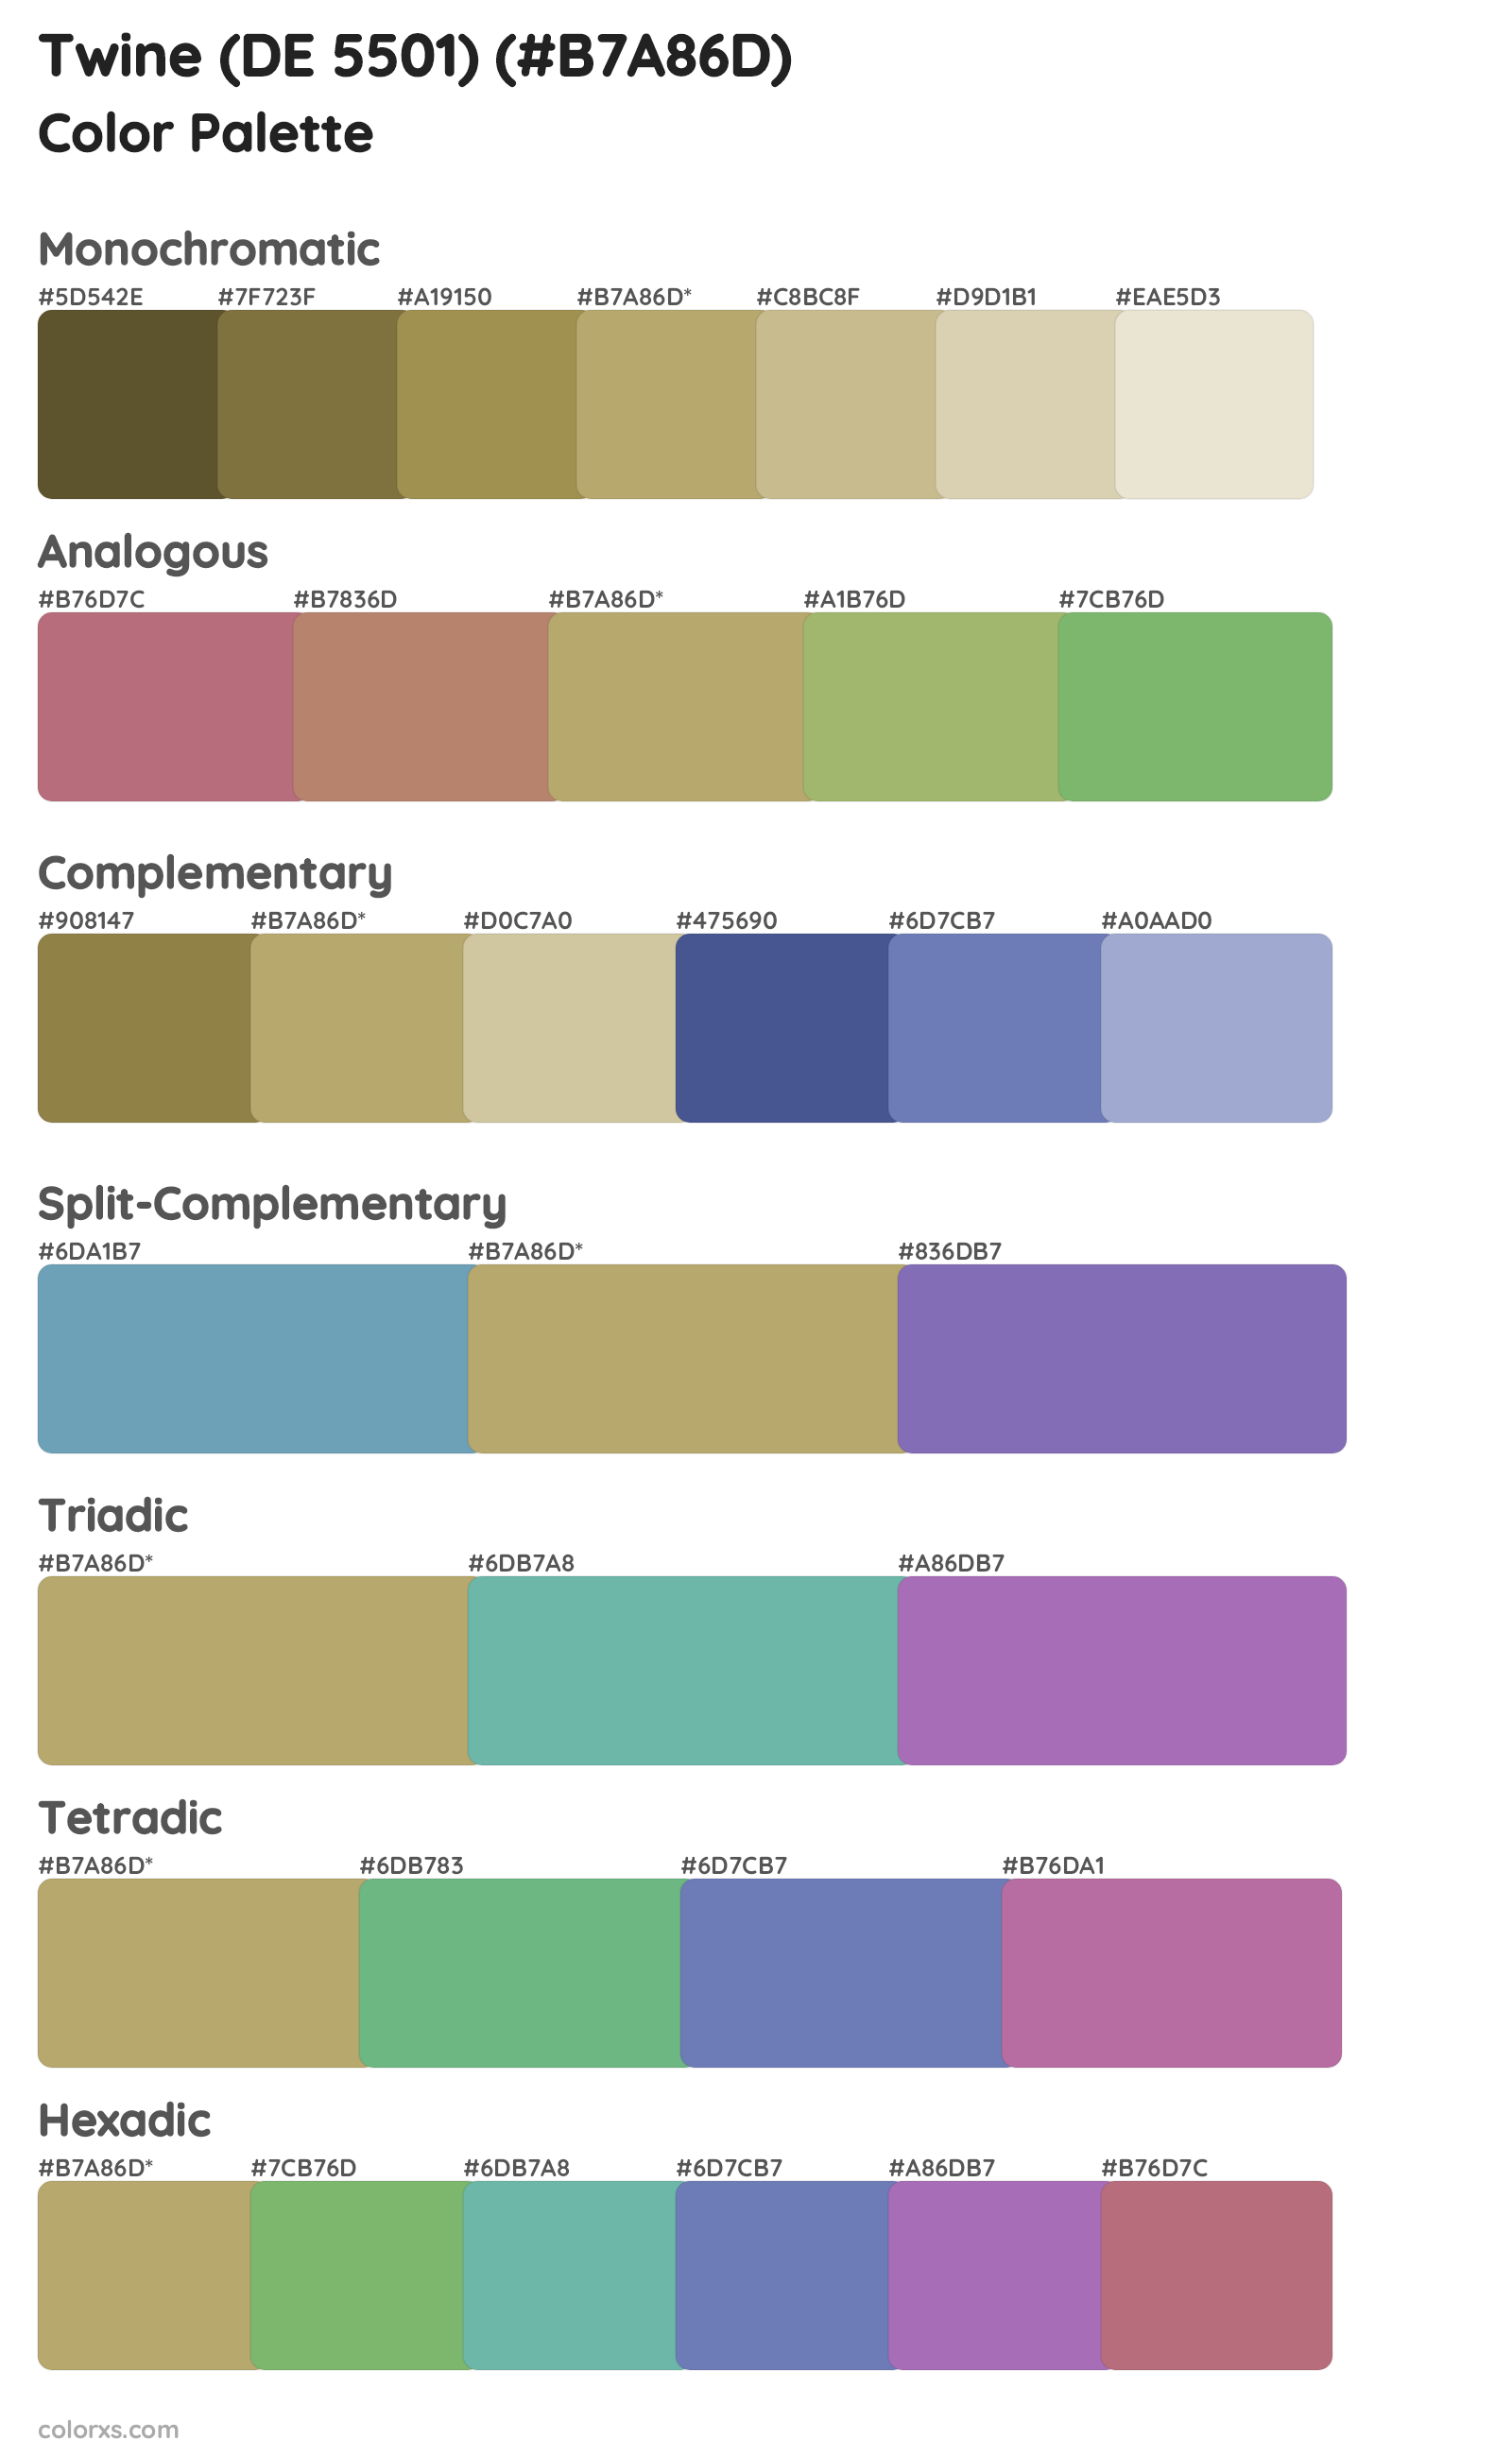 Twine (DE 5501) Color Scheme Palettes